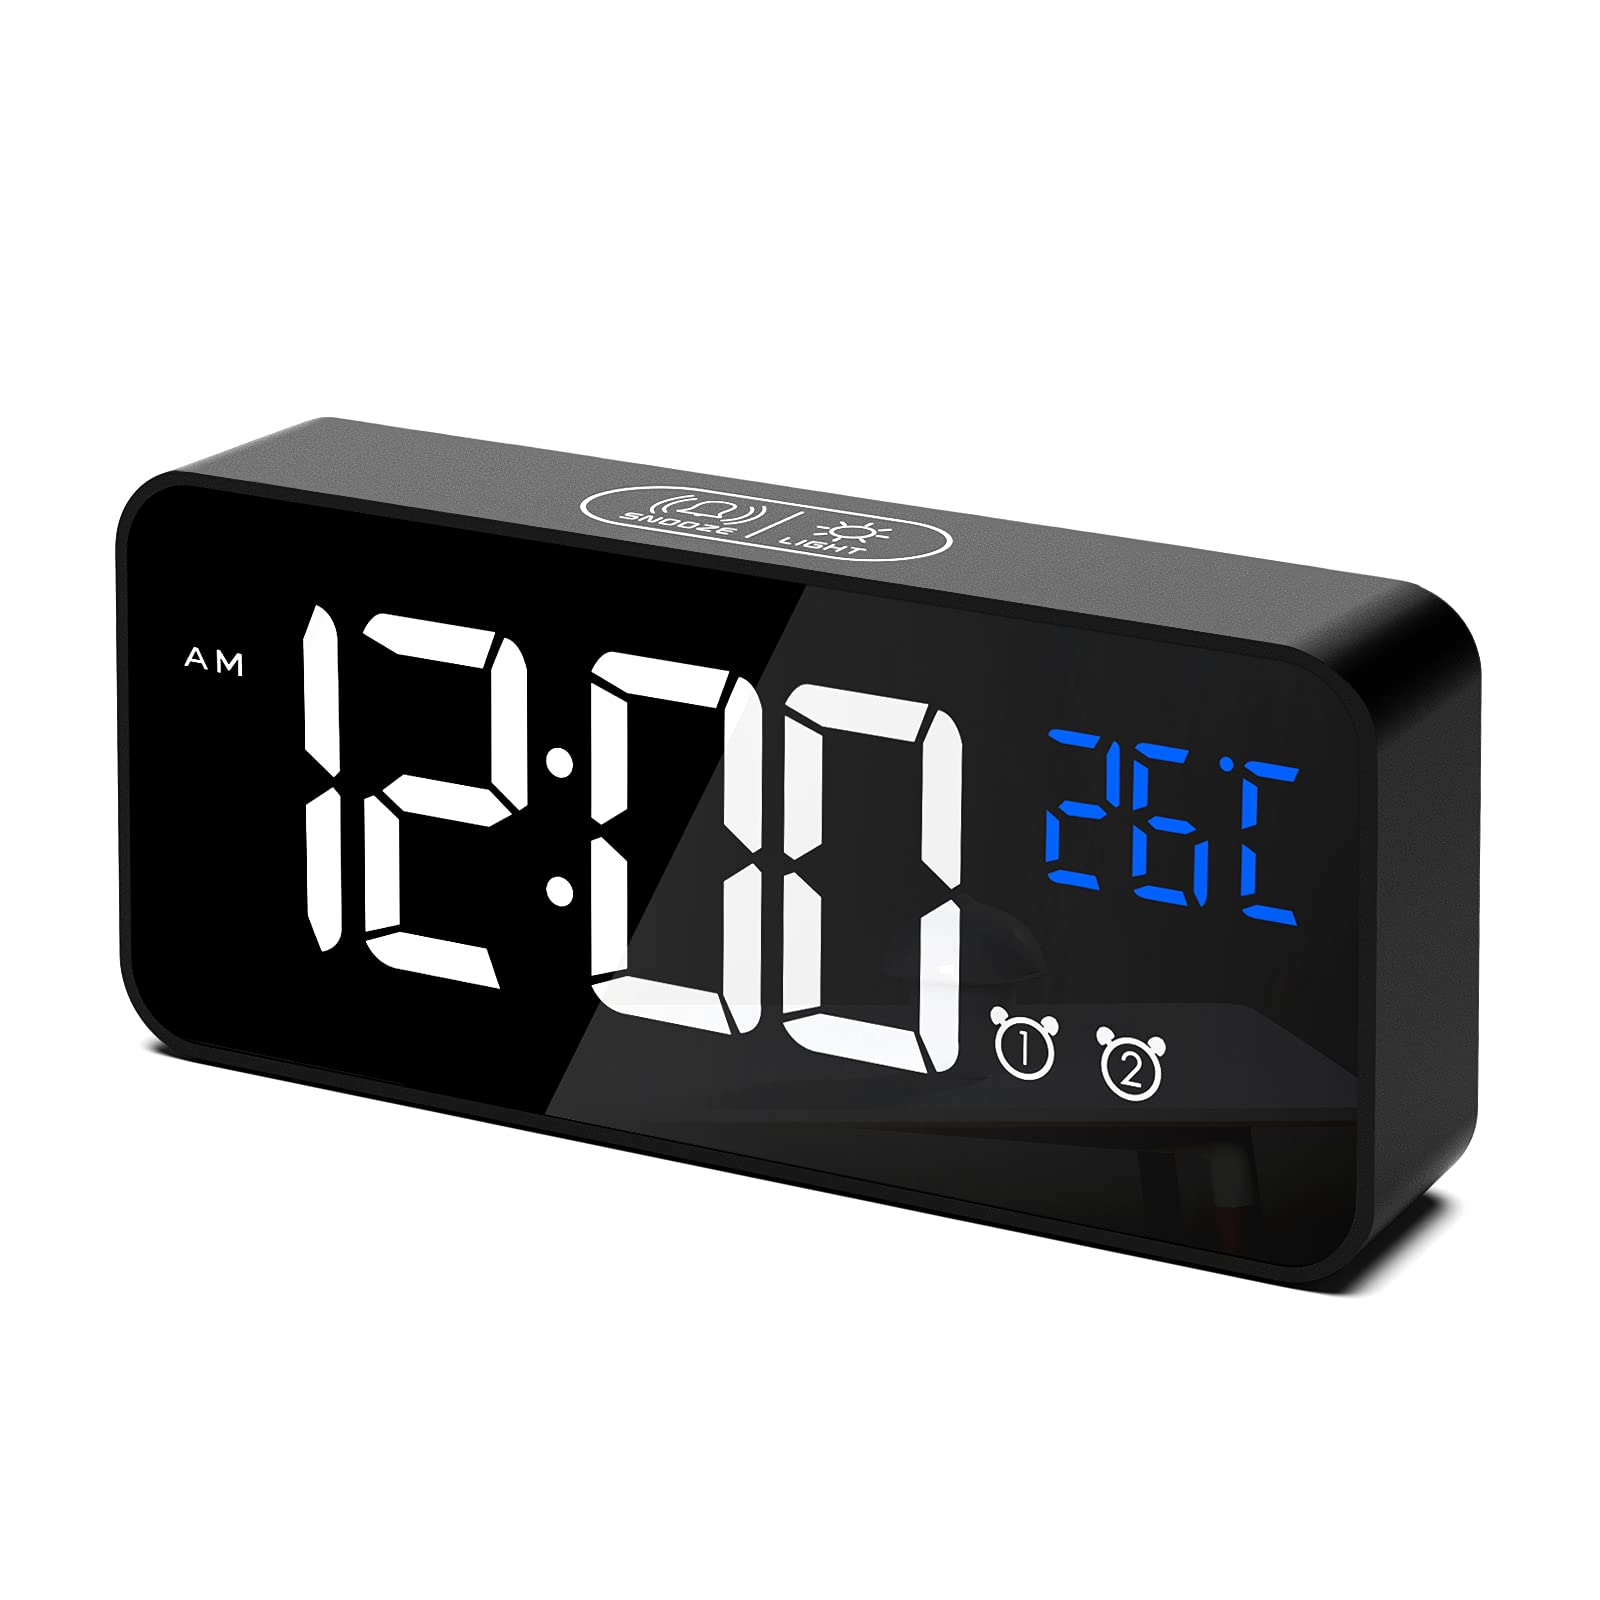 Reloj Despertador Digital, Despertador Alarma Dual Digital Alarm Clock Con Temperatura, 4 Brillo Ajustable Función Snooze, Puert Black